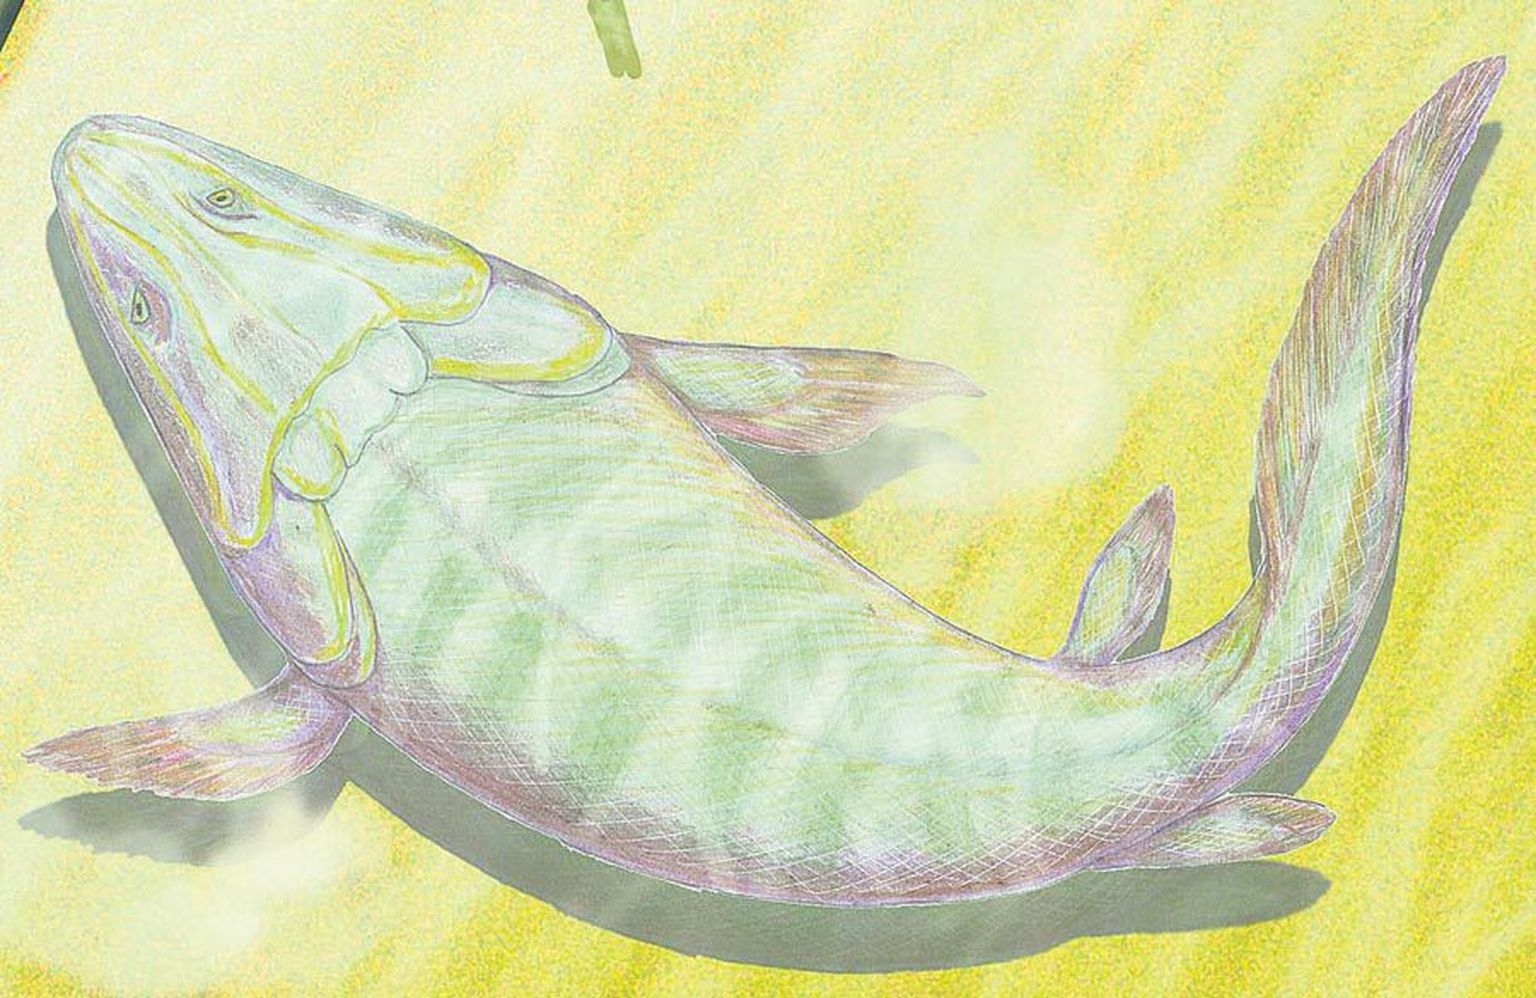 Kunstniku kujutluses näeb Devoni ajal Eesti, Läti ja meie naaberalade kohal lainetanud troopikameres elanud Panderichthys välja niisugune. Raske uskuda, kuid väga kaugelt on see kala meile sugulane.